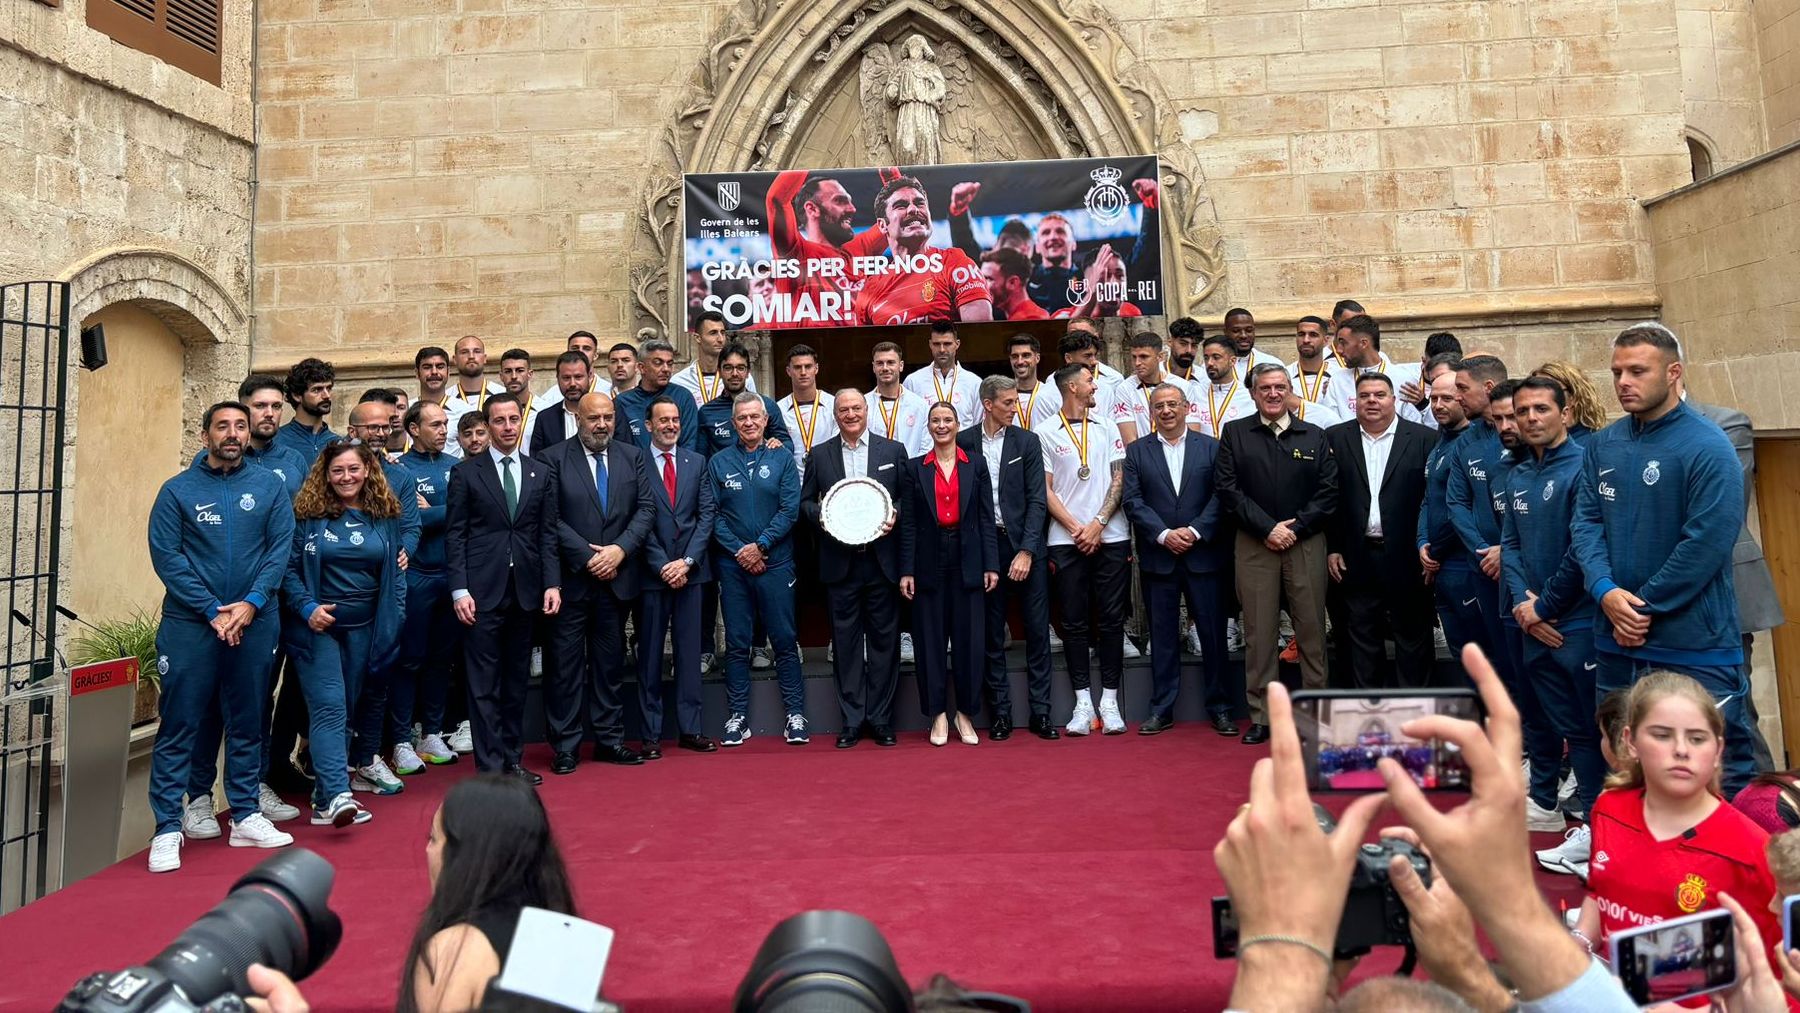 Marga Prohens y otras autoridades con los subcampeones de la Copa del Rey de Fútbol.